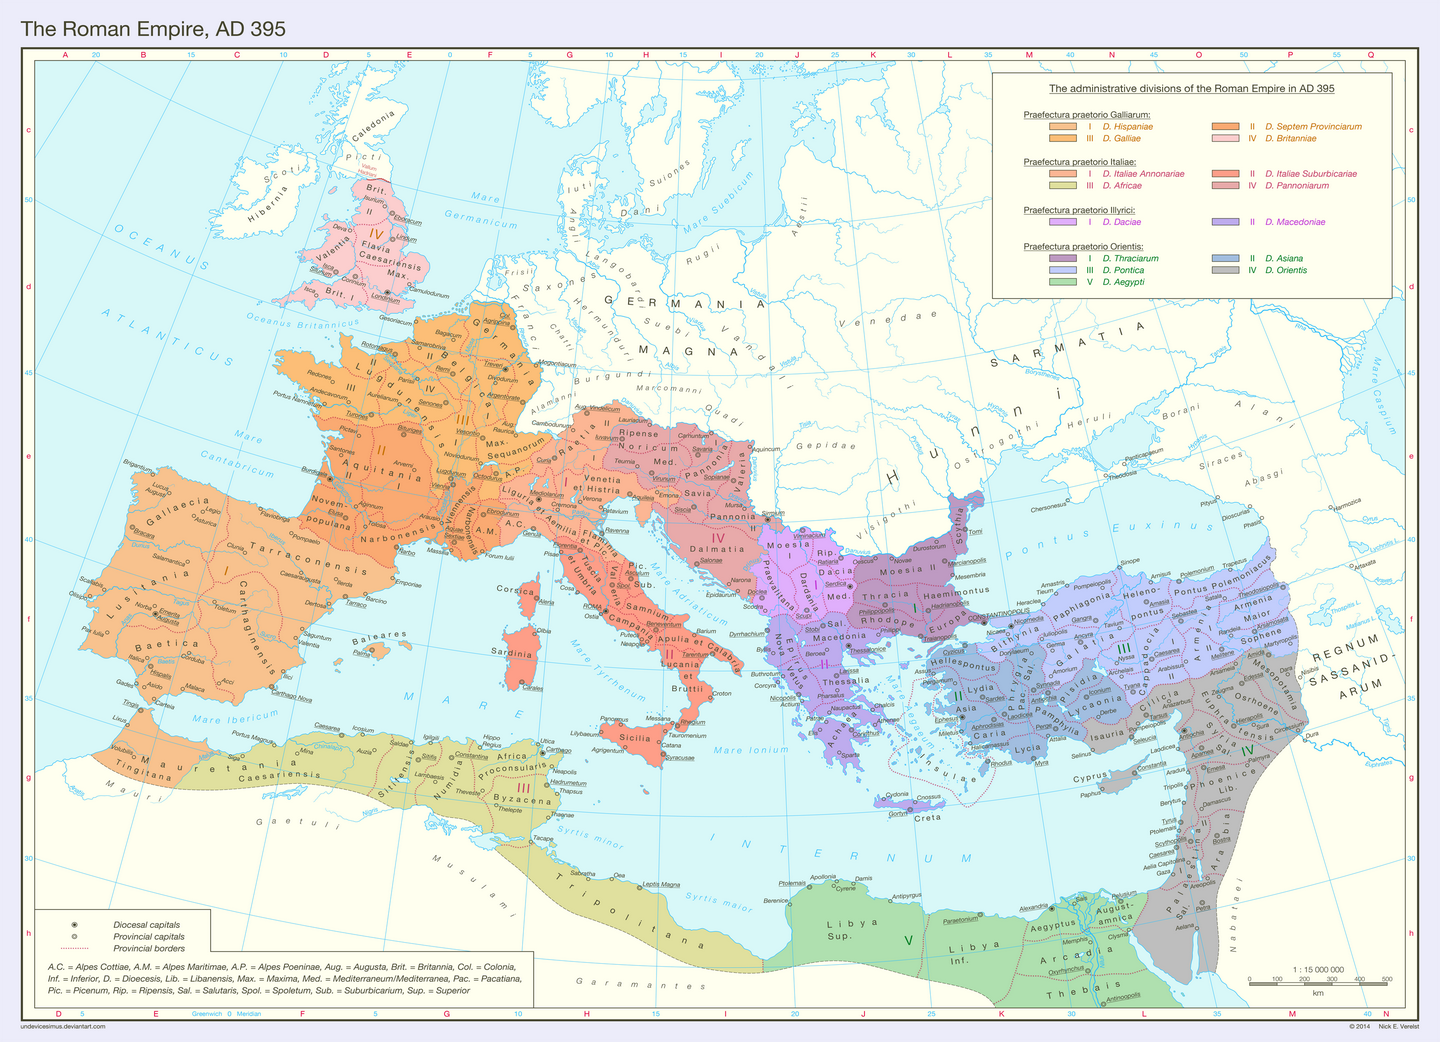 关于一张公元395年的罗马帝国行政区划图的翻译及资料